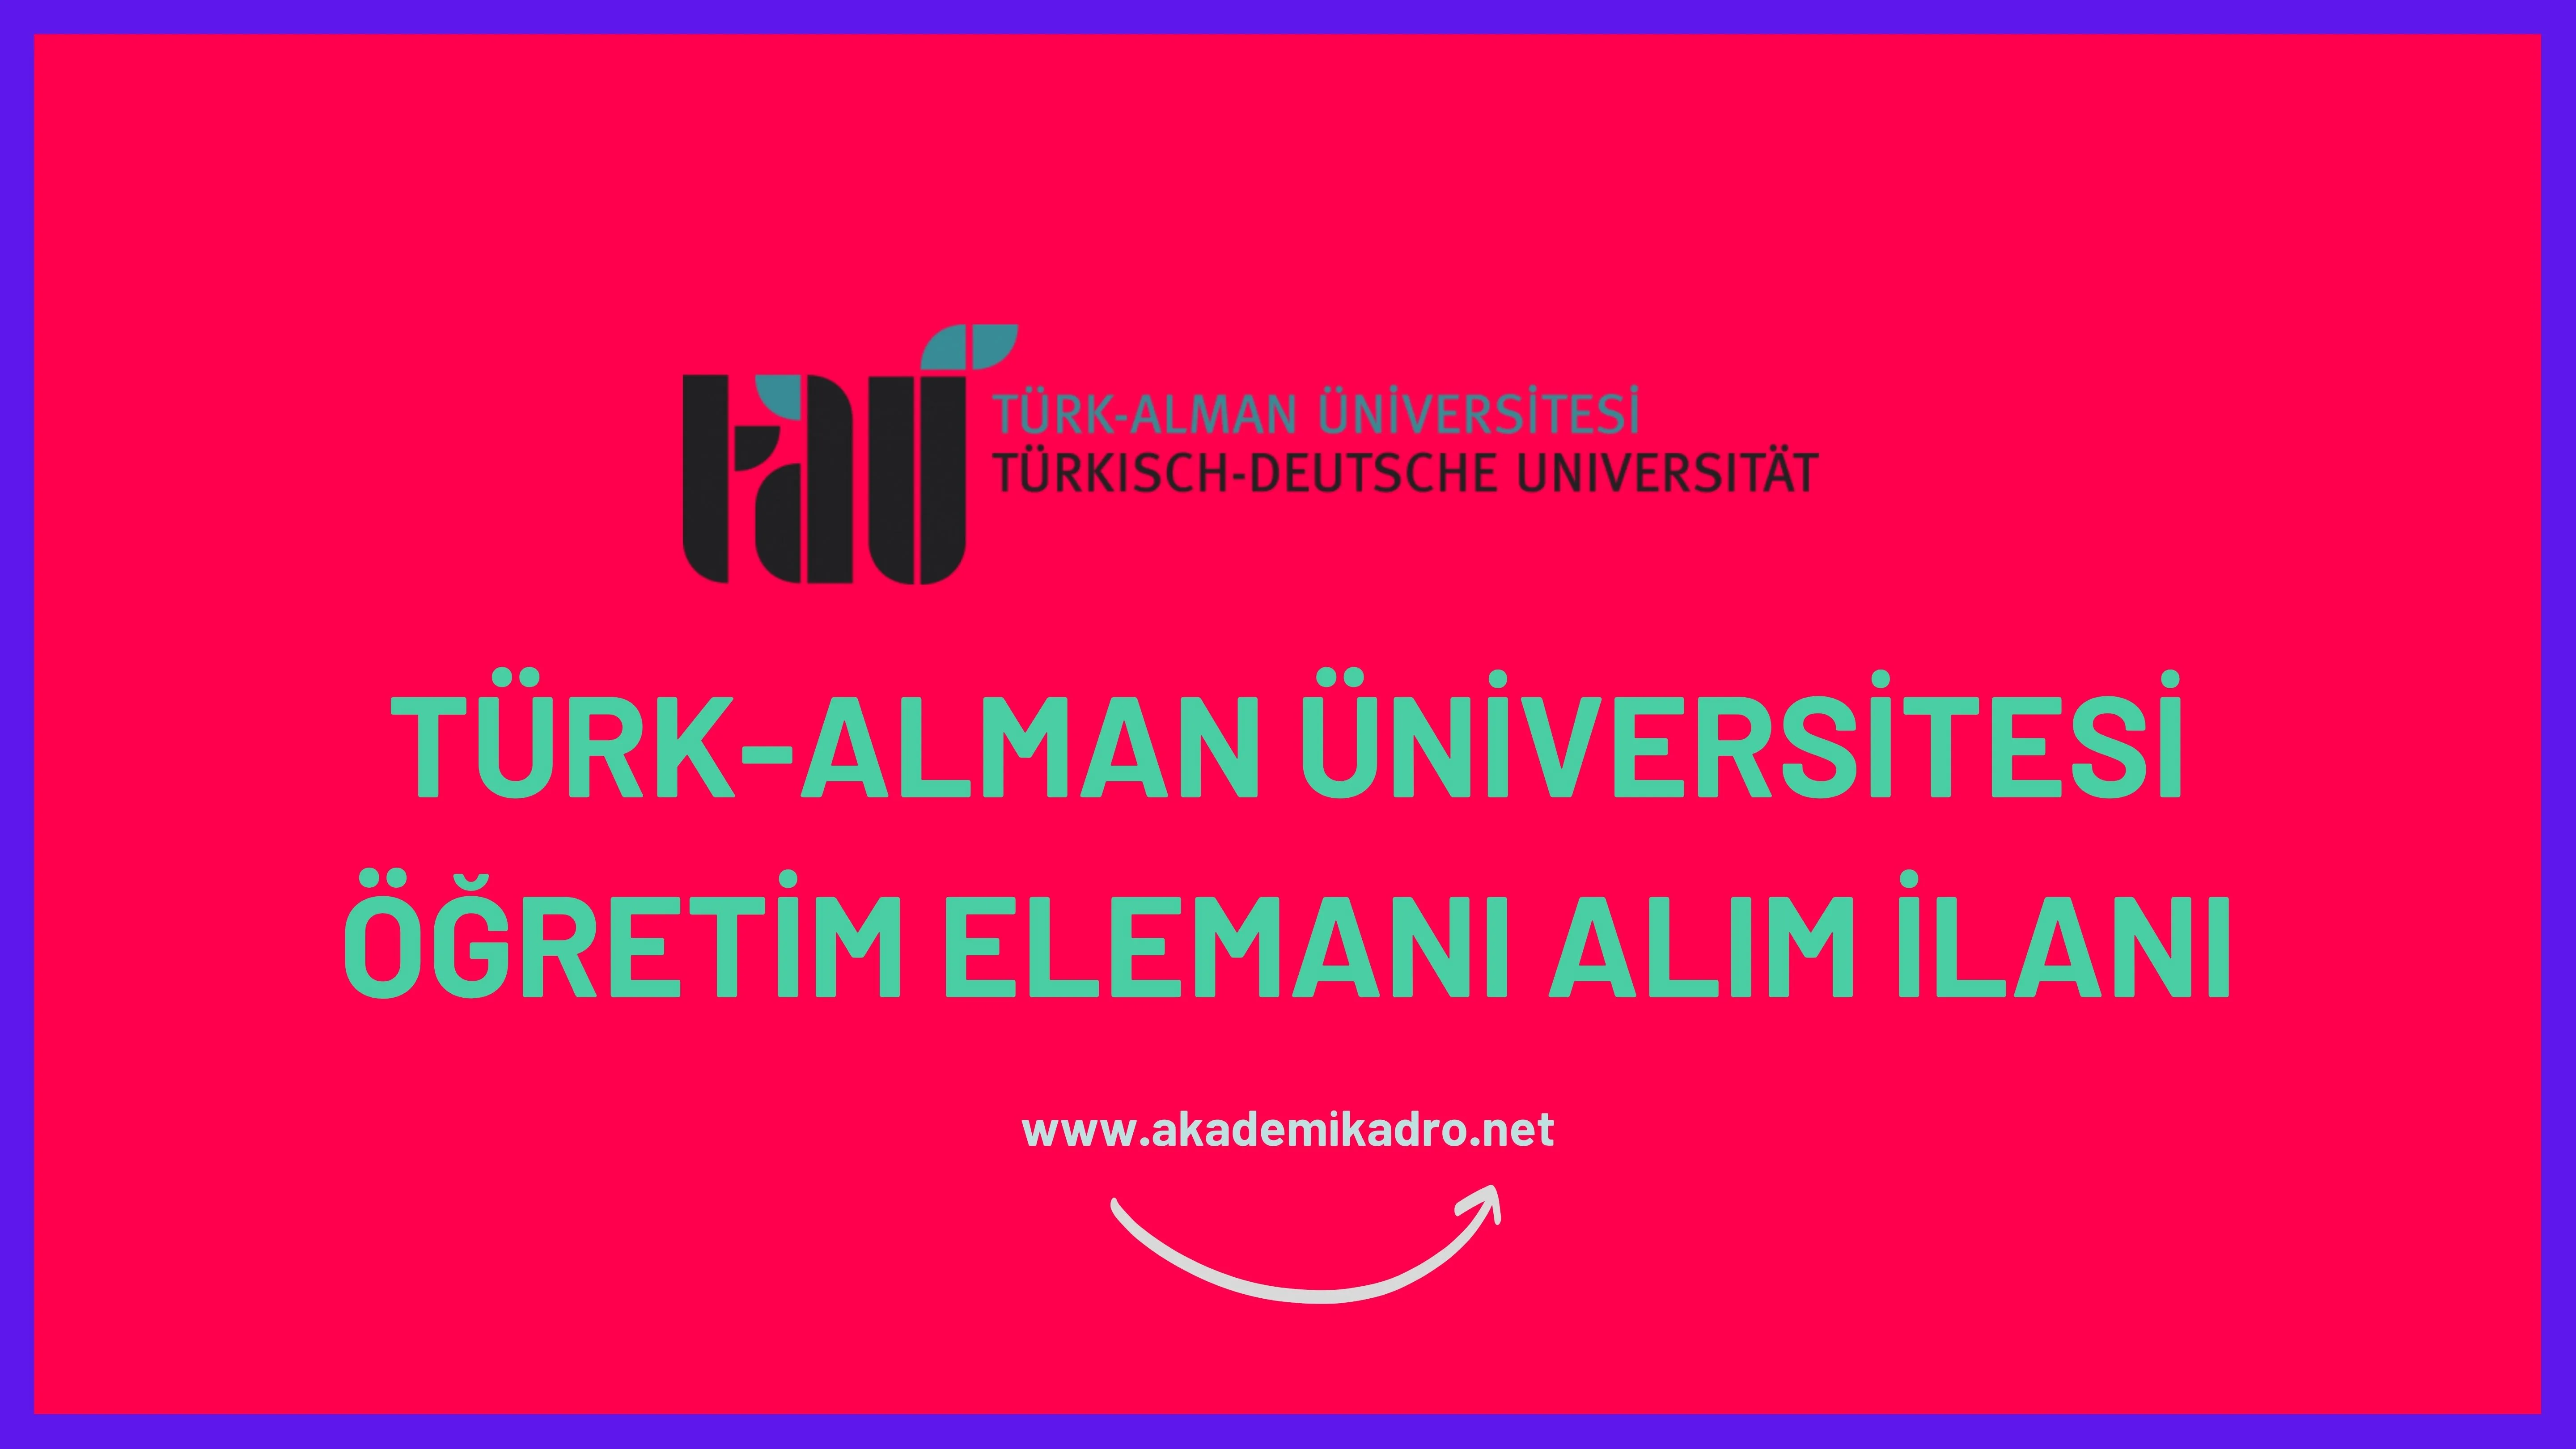 Türk Alman Üniversitesi 3 Öğretim Görevlisi alacaktır. Son başvuru tarihi 21 Ekim 2022